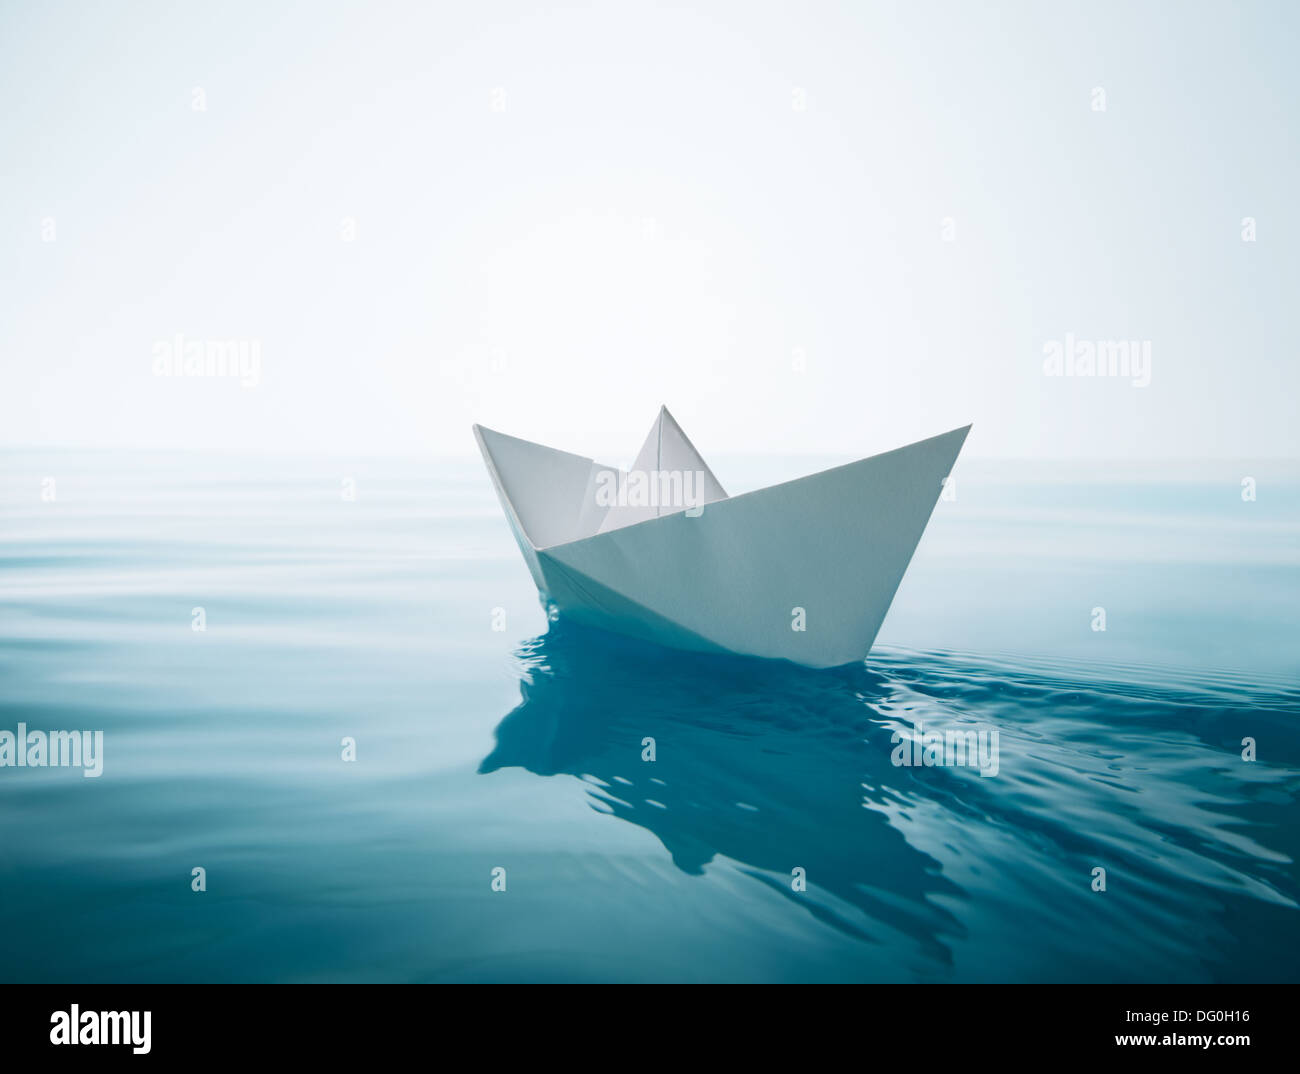 Papierboot Segeln auf dem Wasser verursacht Wellen und Wellen Stockfoto